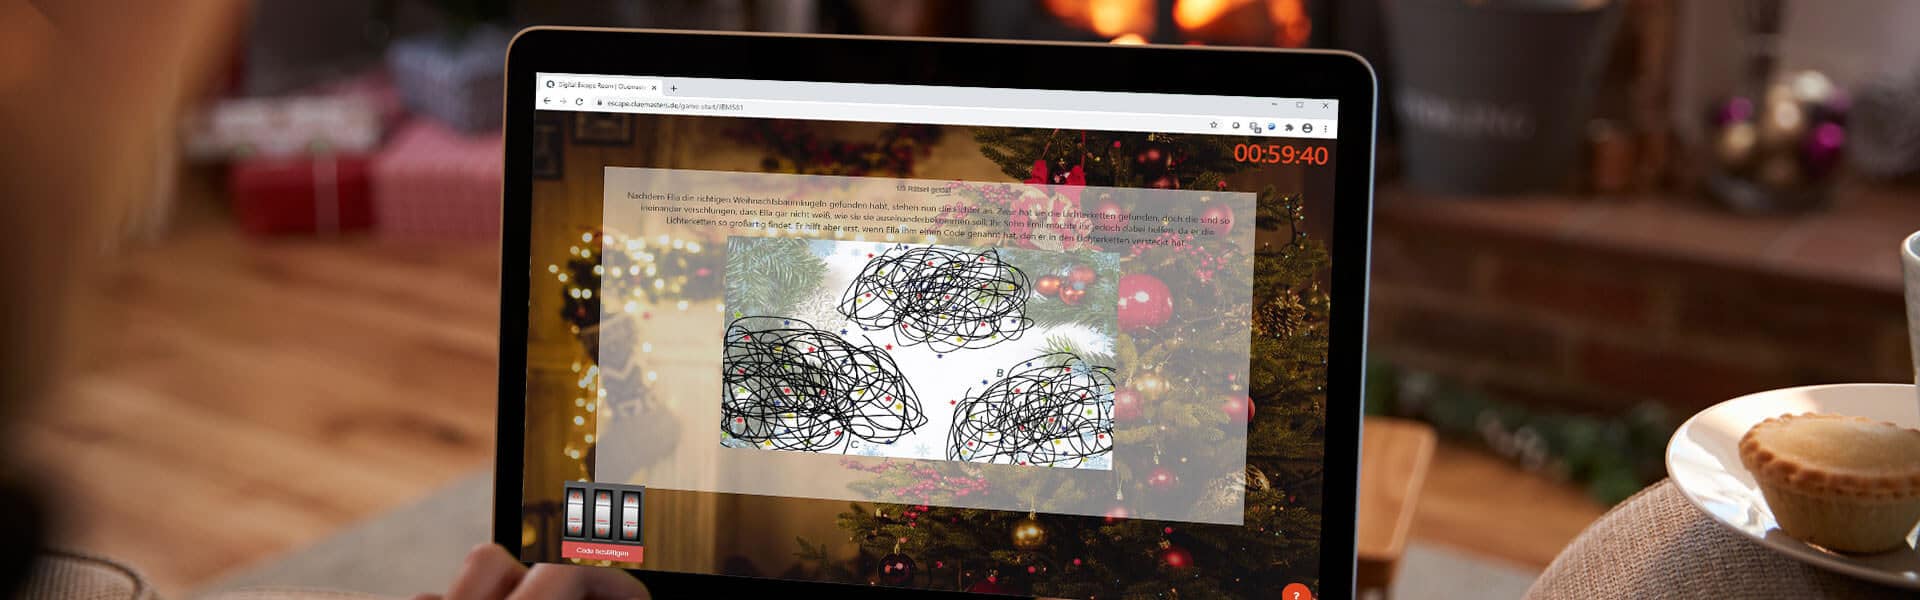 Online Escape Room zur virtuellen Weihnachtsfeier mit dem Team - b-ceed eventagentur